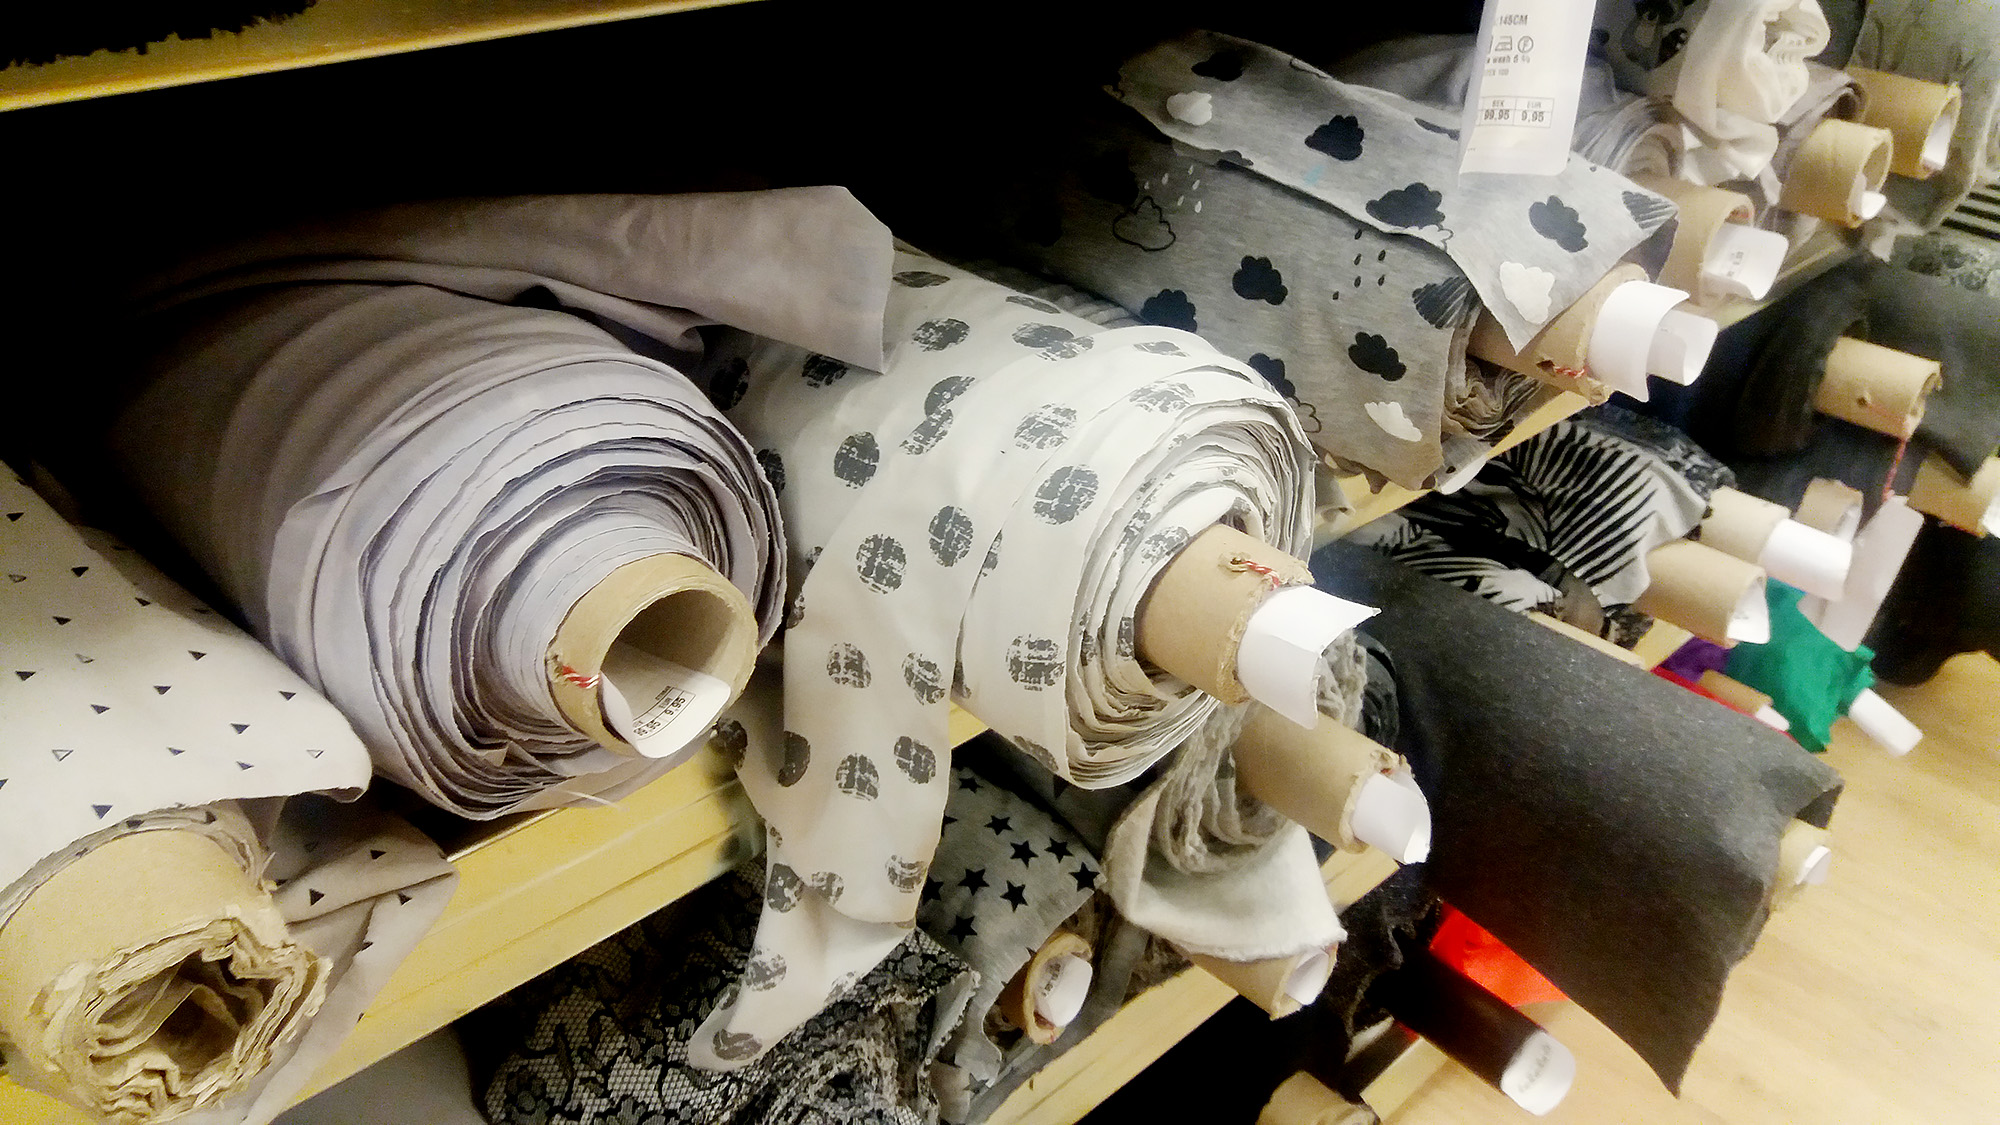 Fabric shopping in Copenhagen